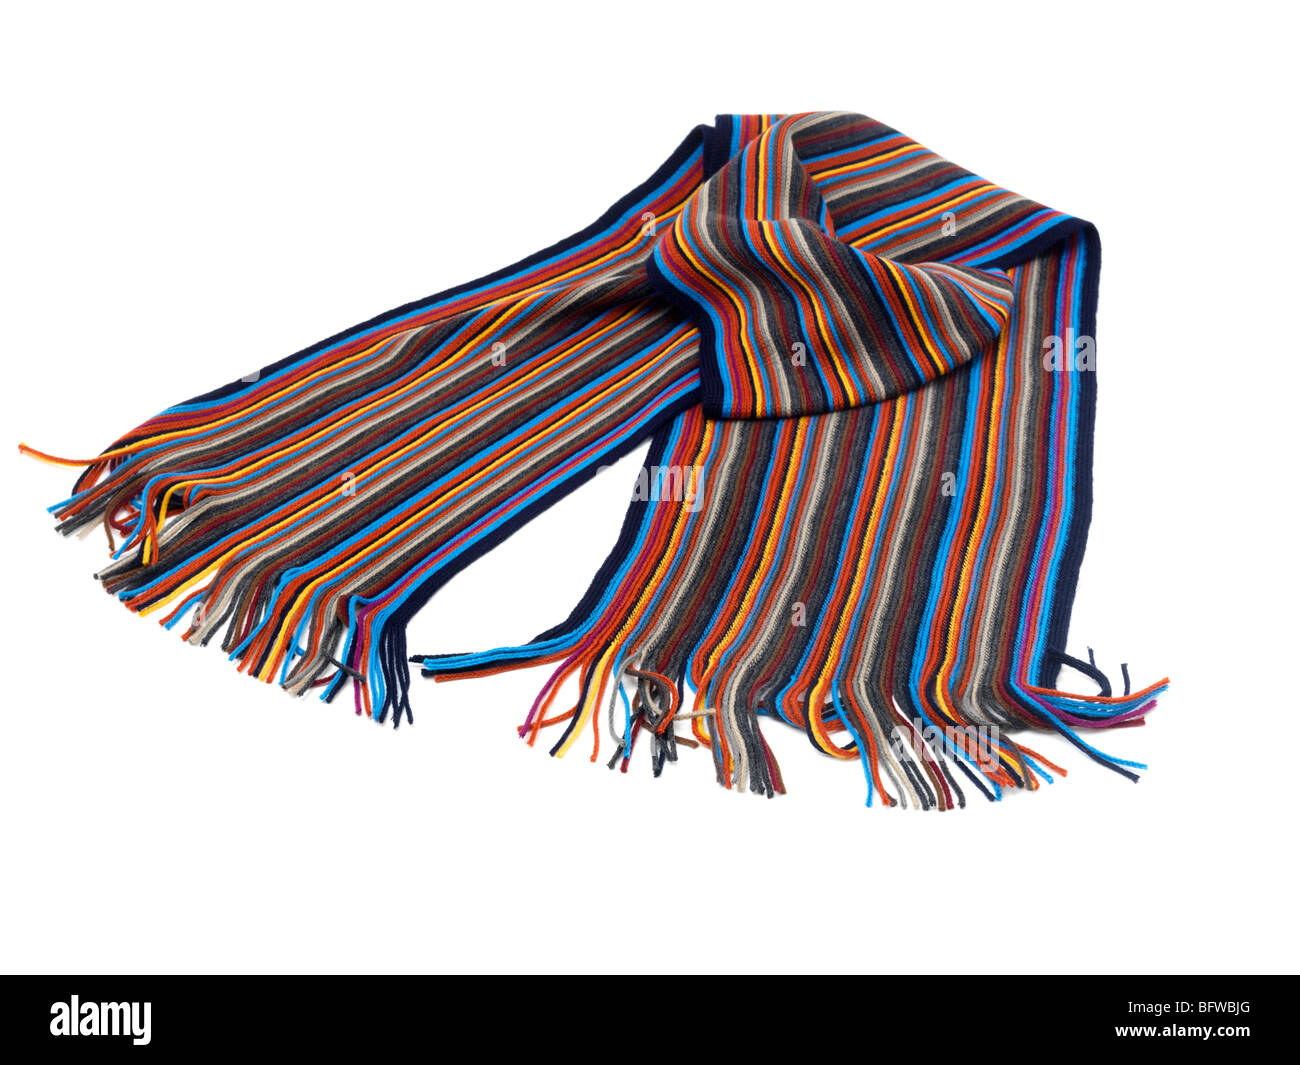 Echarpe laine multicolore Banque D'Images